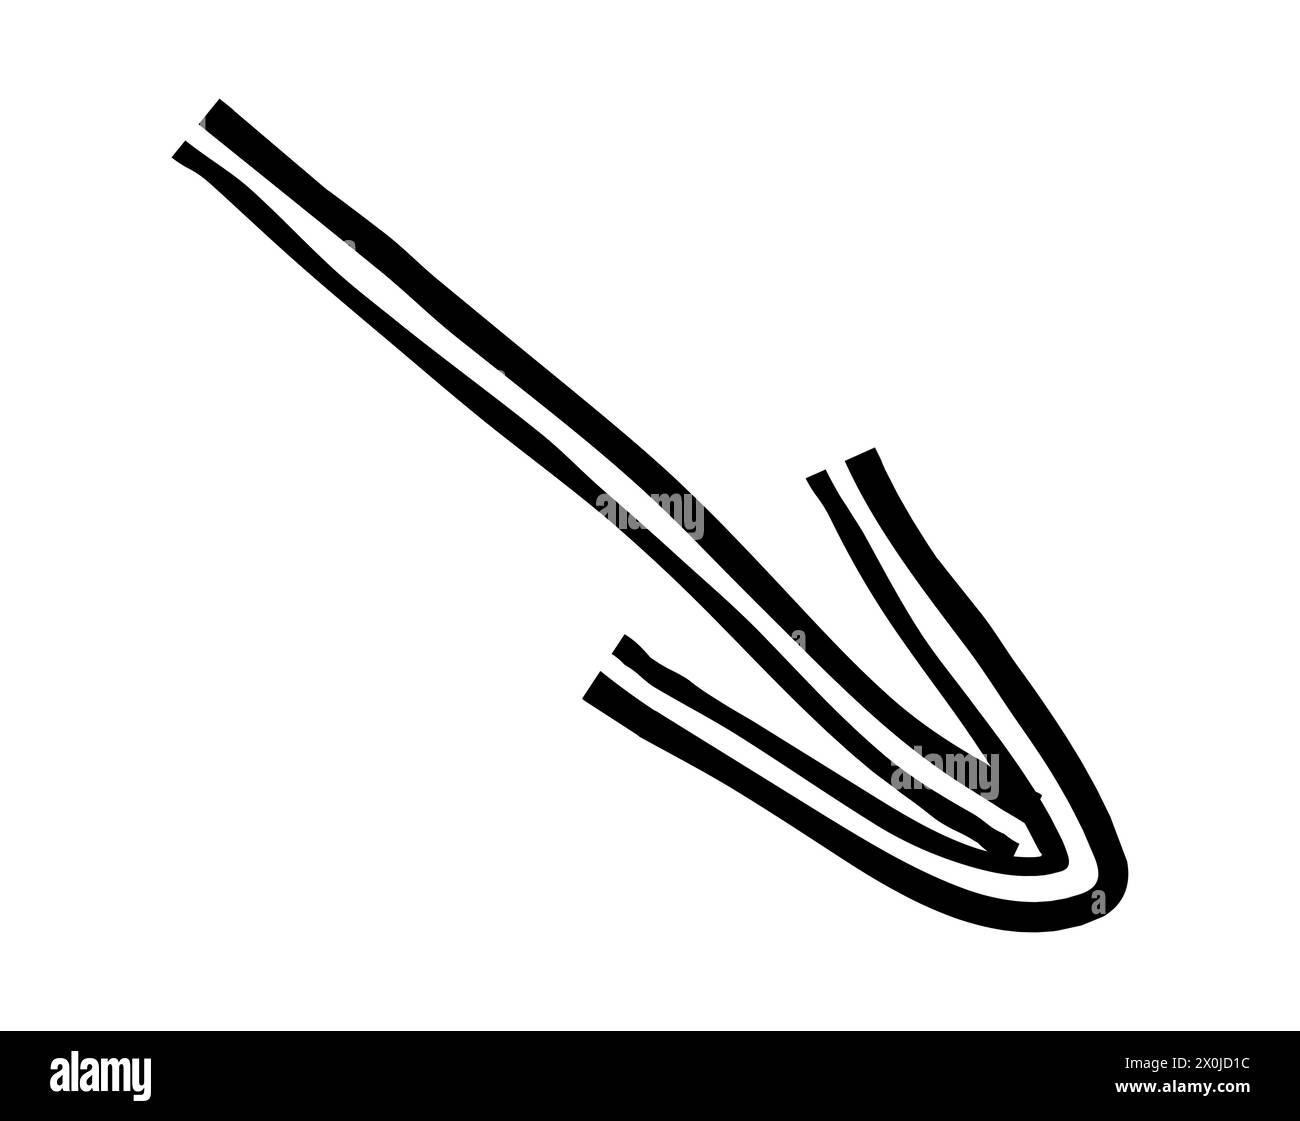 Semplice freccia disegnata a mano con pastelli di cera, gesso o carbone. Consistenza asciutta non uniforme per sottolineare l'accento. Linee disegnate a matita, barrate, Illustrazione Vettoriale